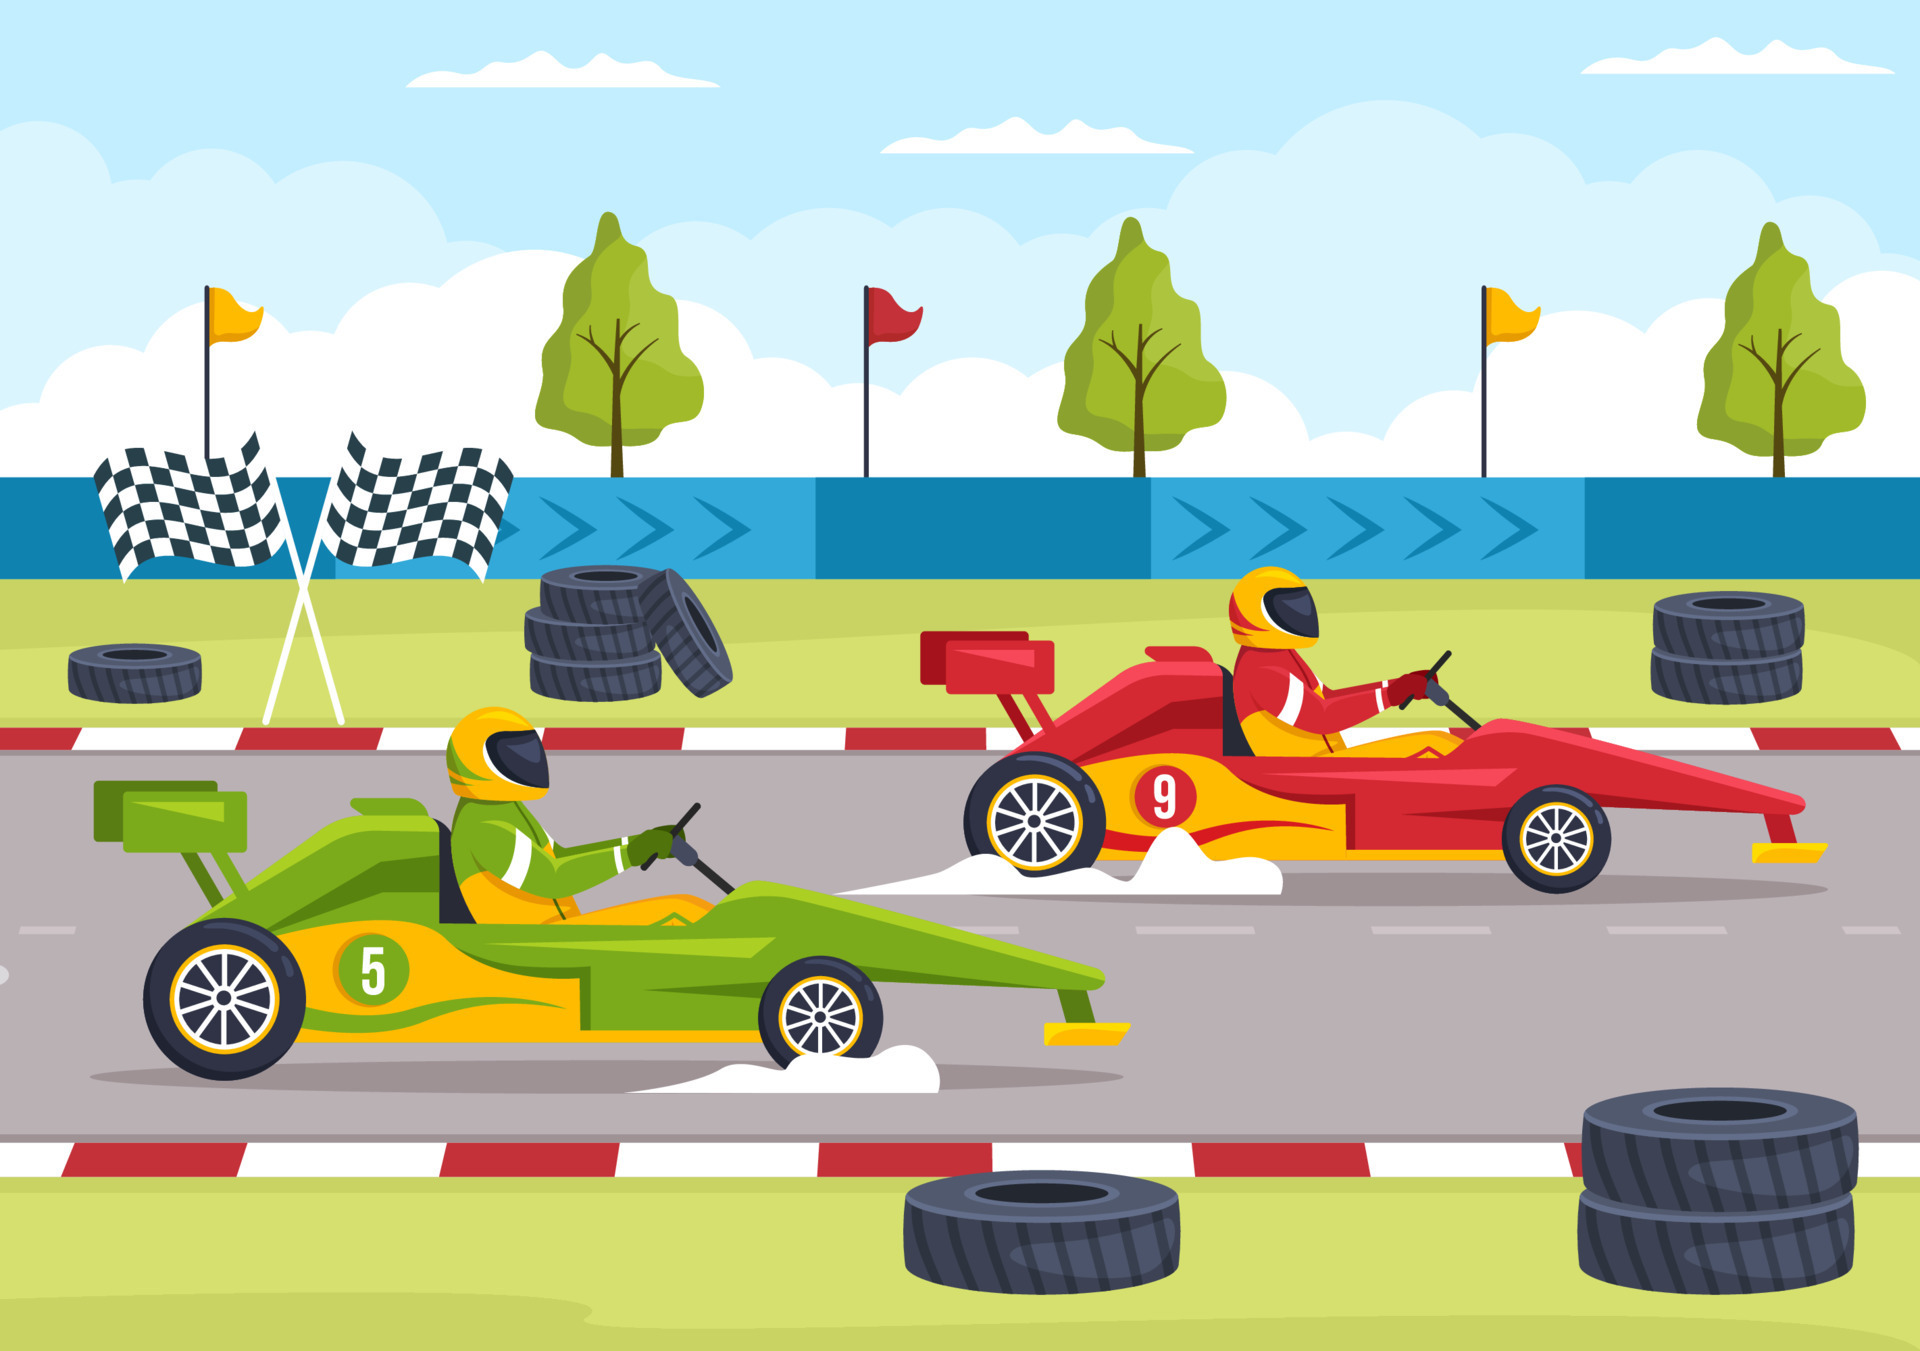 esporte de kart com jogo de corrida go kart ou mini carro em pequena pista  de circuito em ilustração de modelo desenhado à mão de desenho animado  plano 15739612 Vetor no Vecteezy